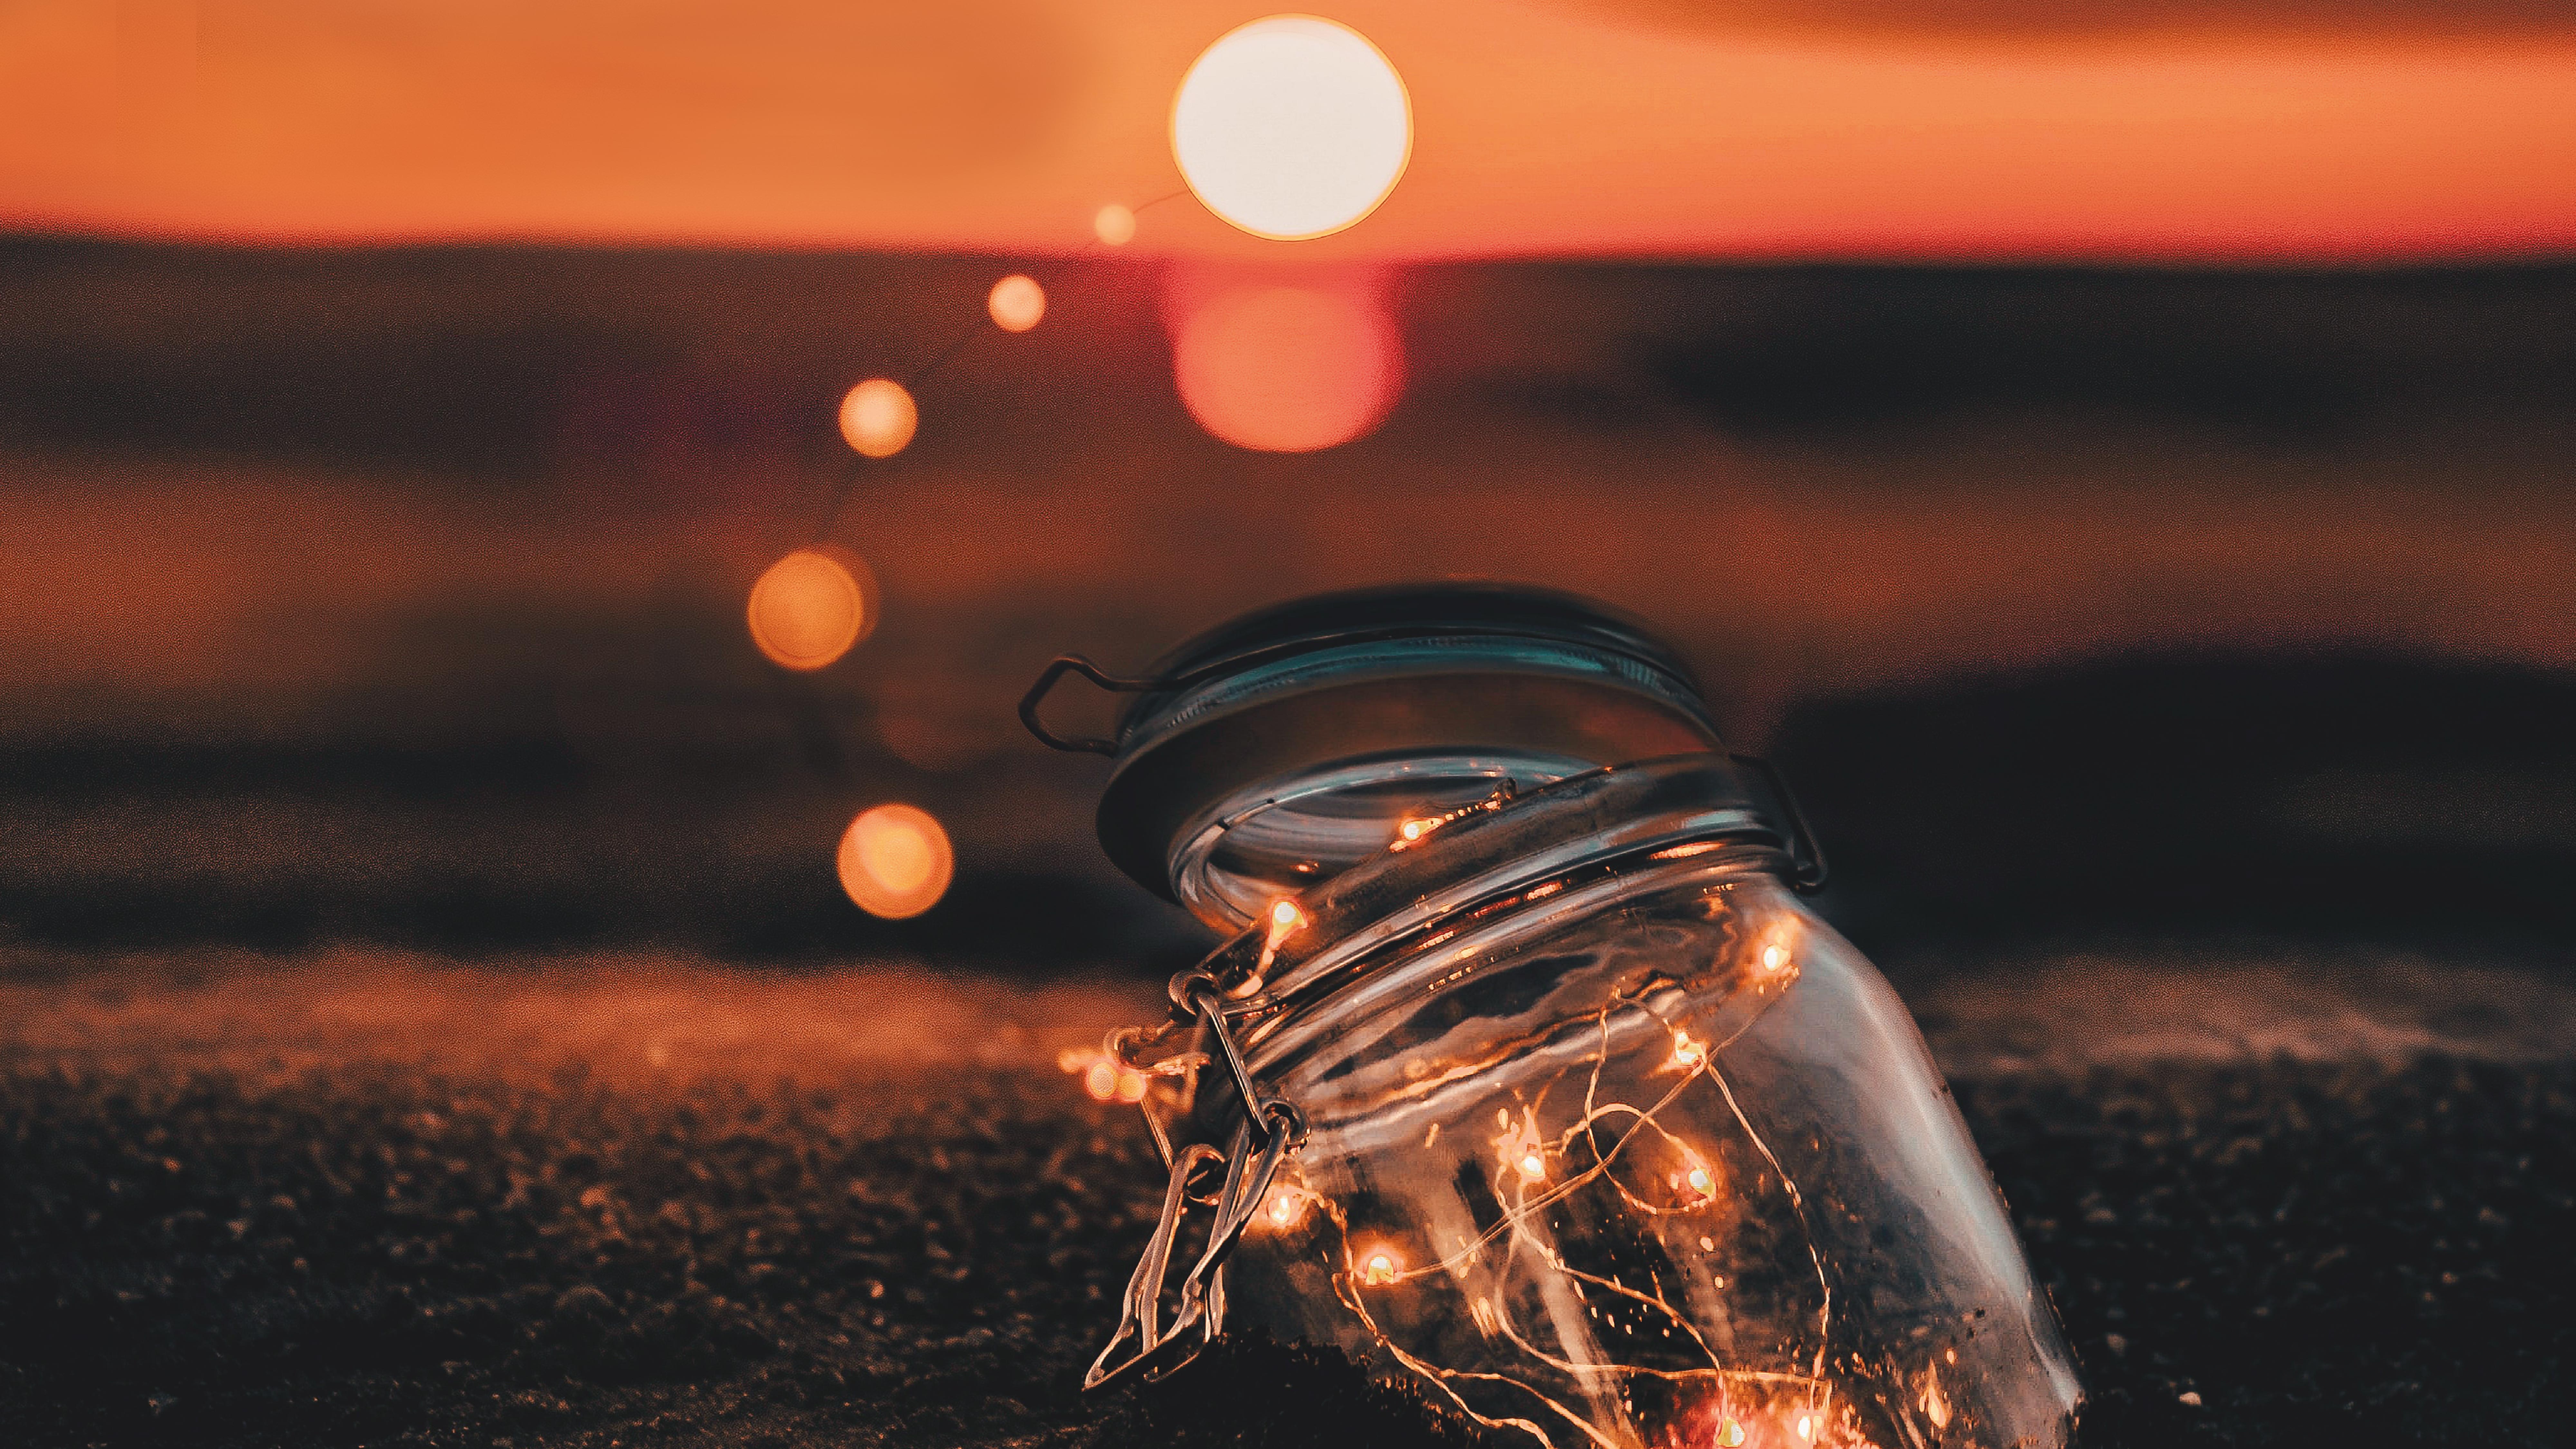 Foto evocativa di un vasetto illuminato sulla spiaggia al tramonto